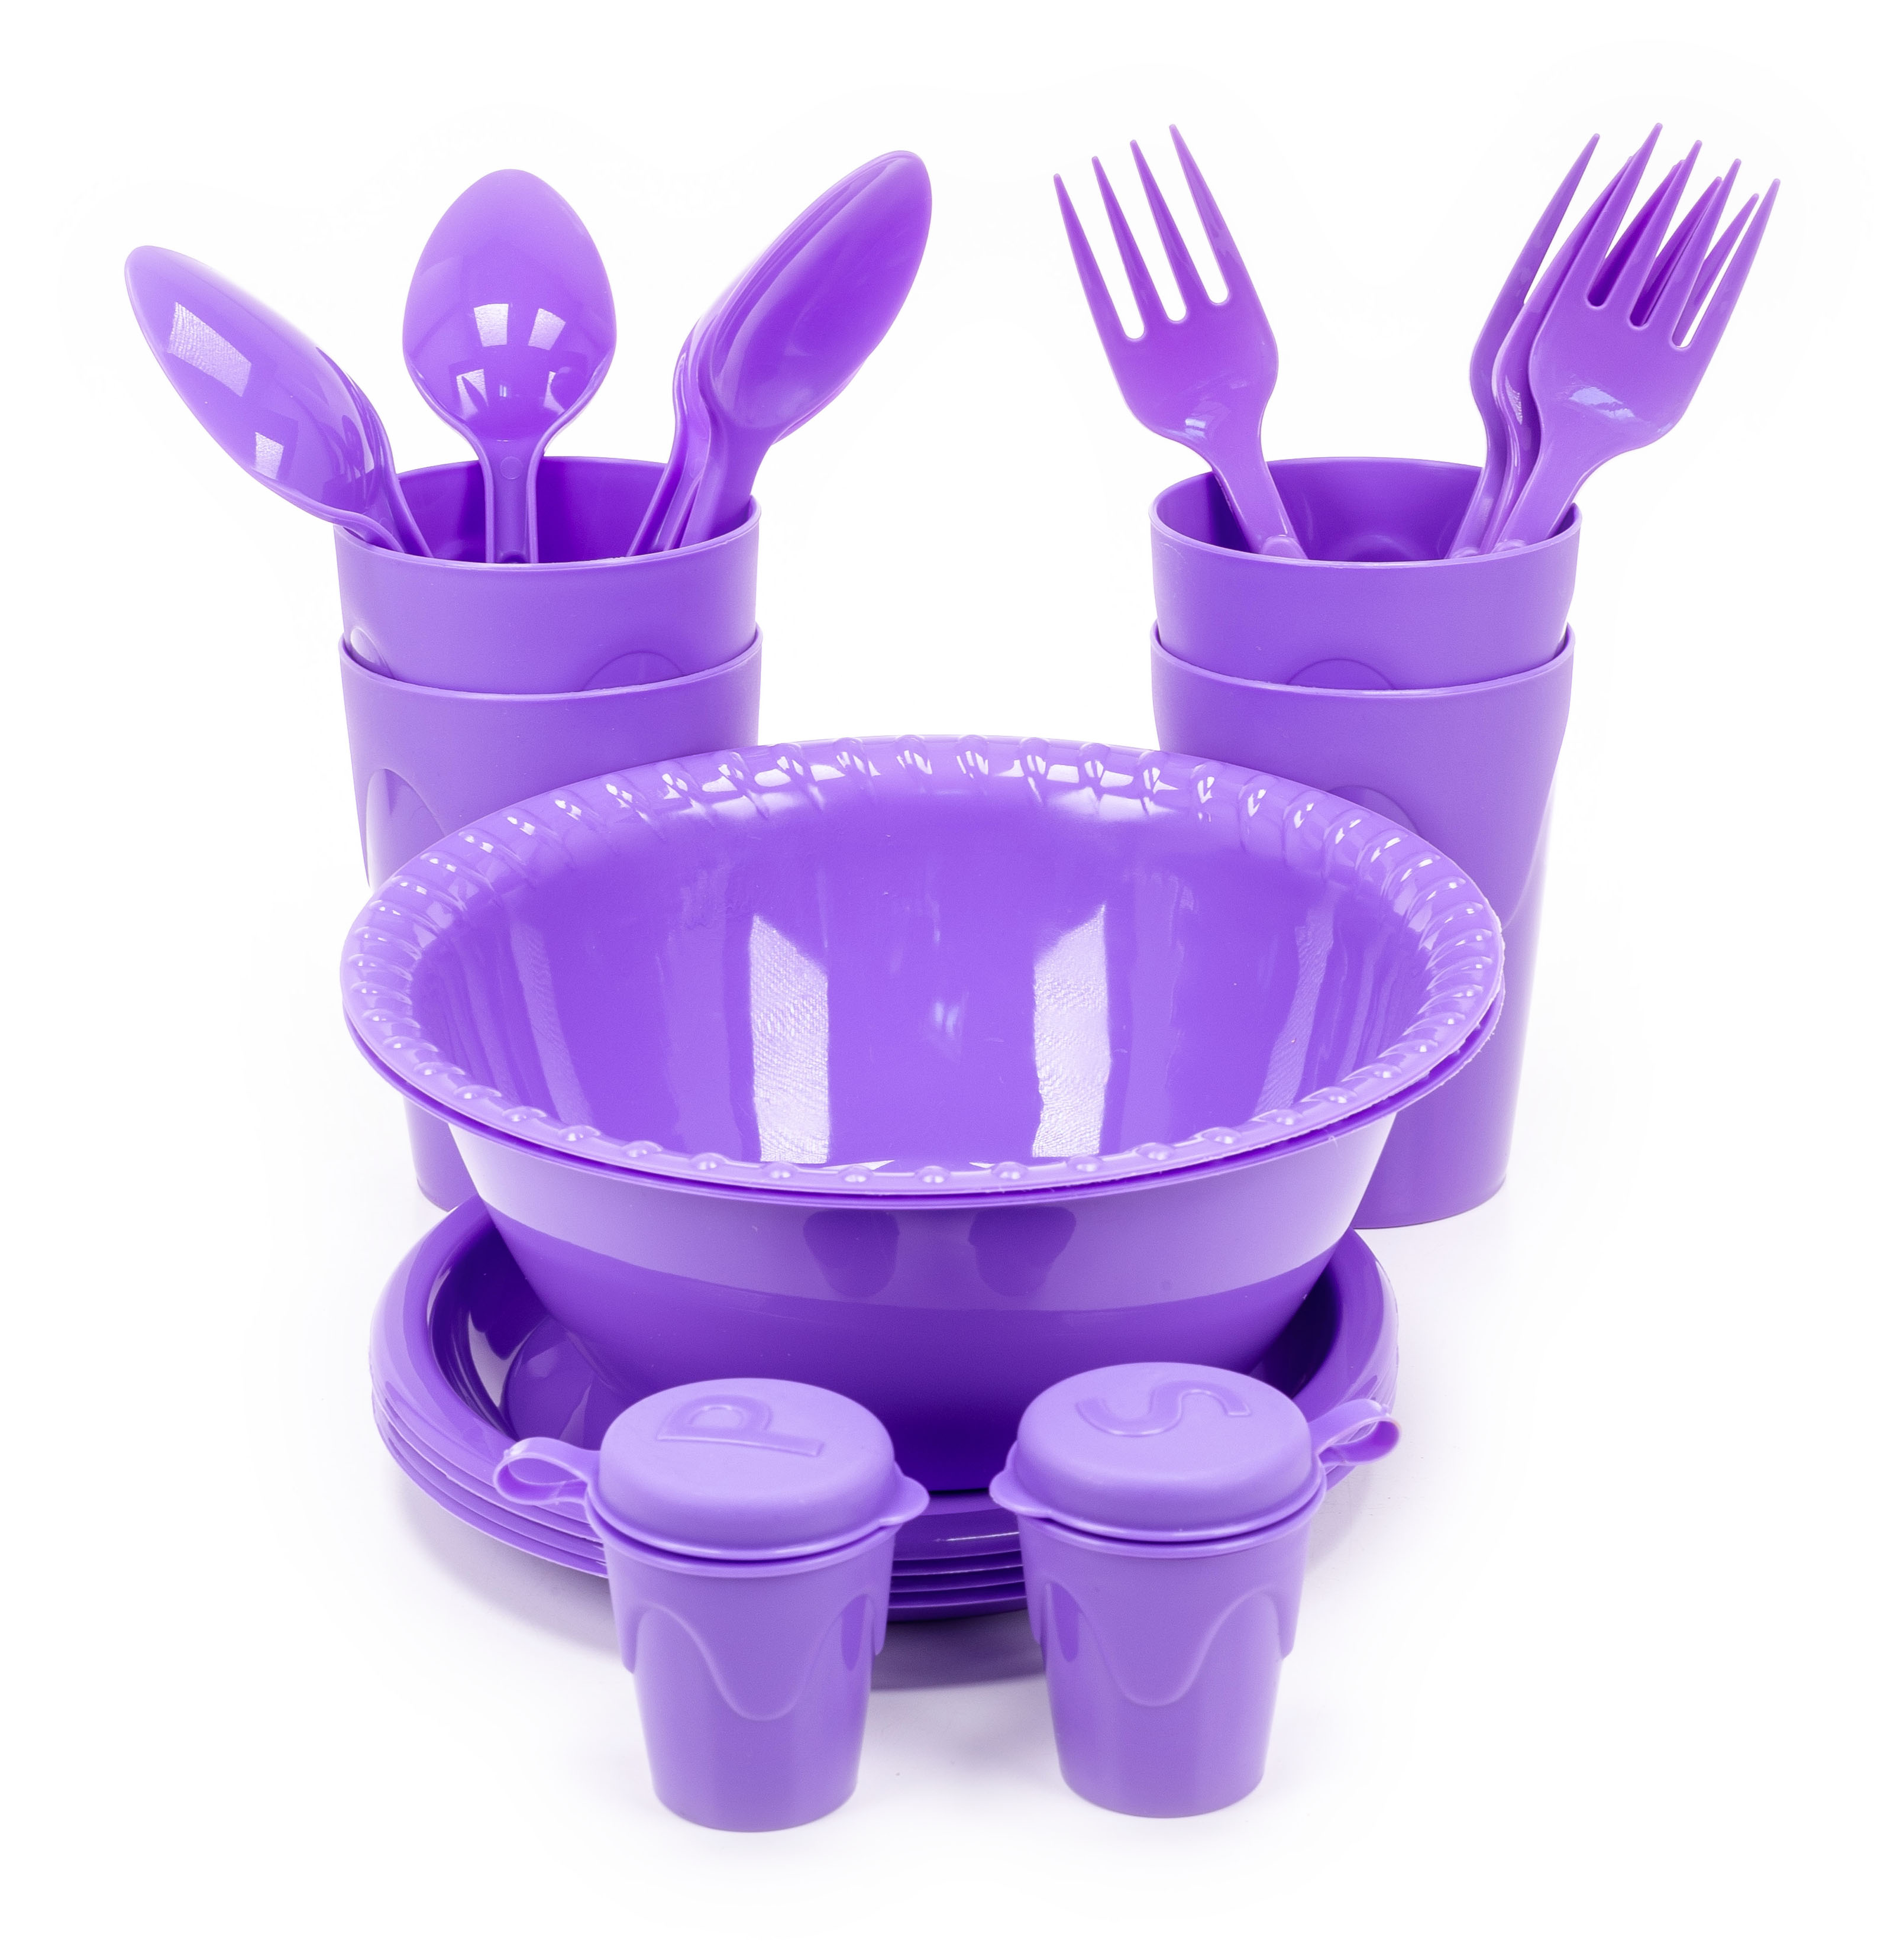 Набор посуды Martika Антонио для пикника пластик фиолетовый на 4 персоны